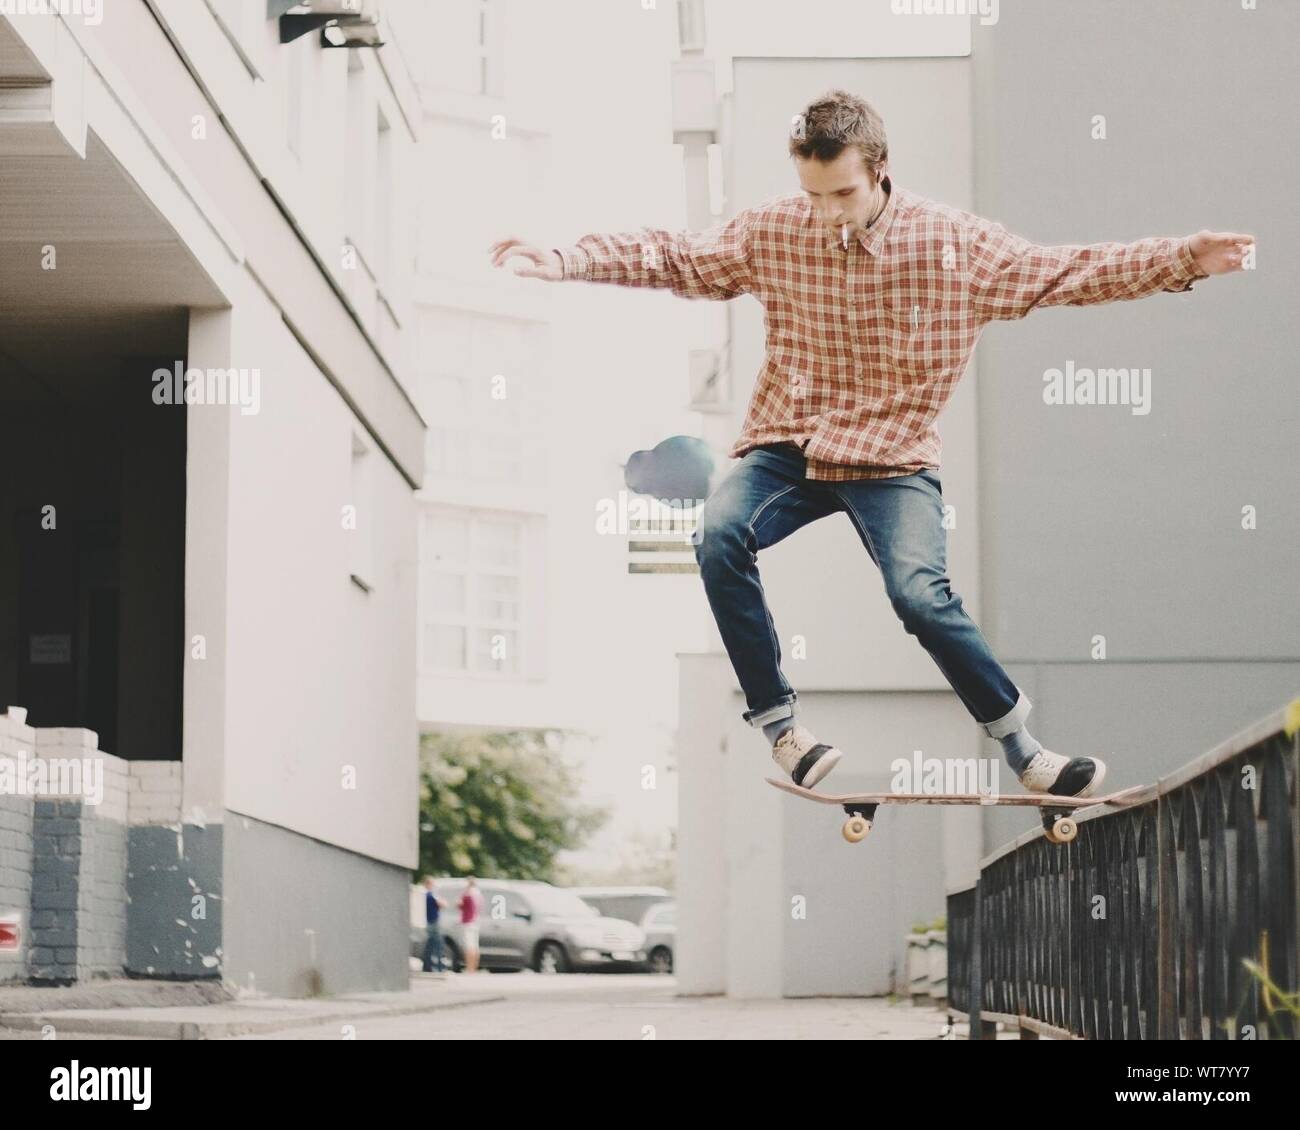 Full Length View Of Man Skateboarding Stock Photo